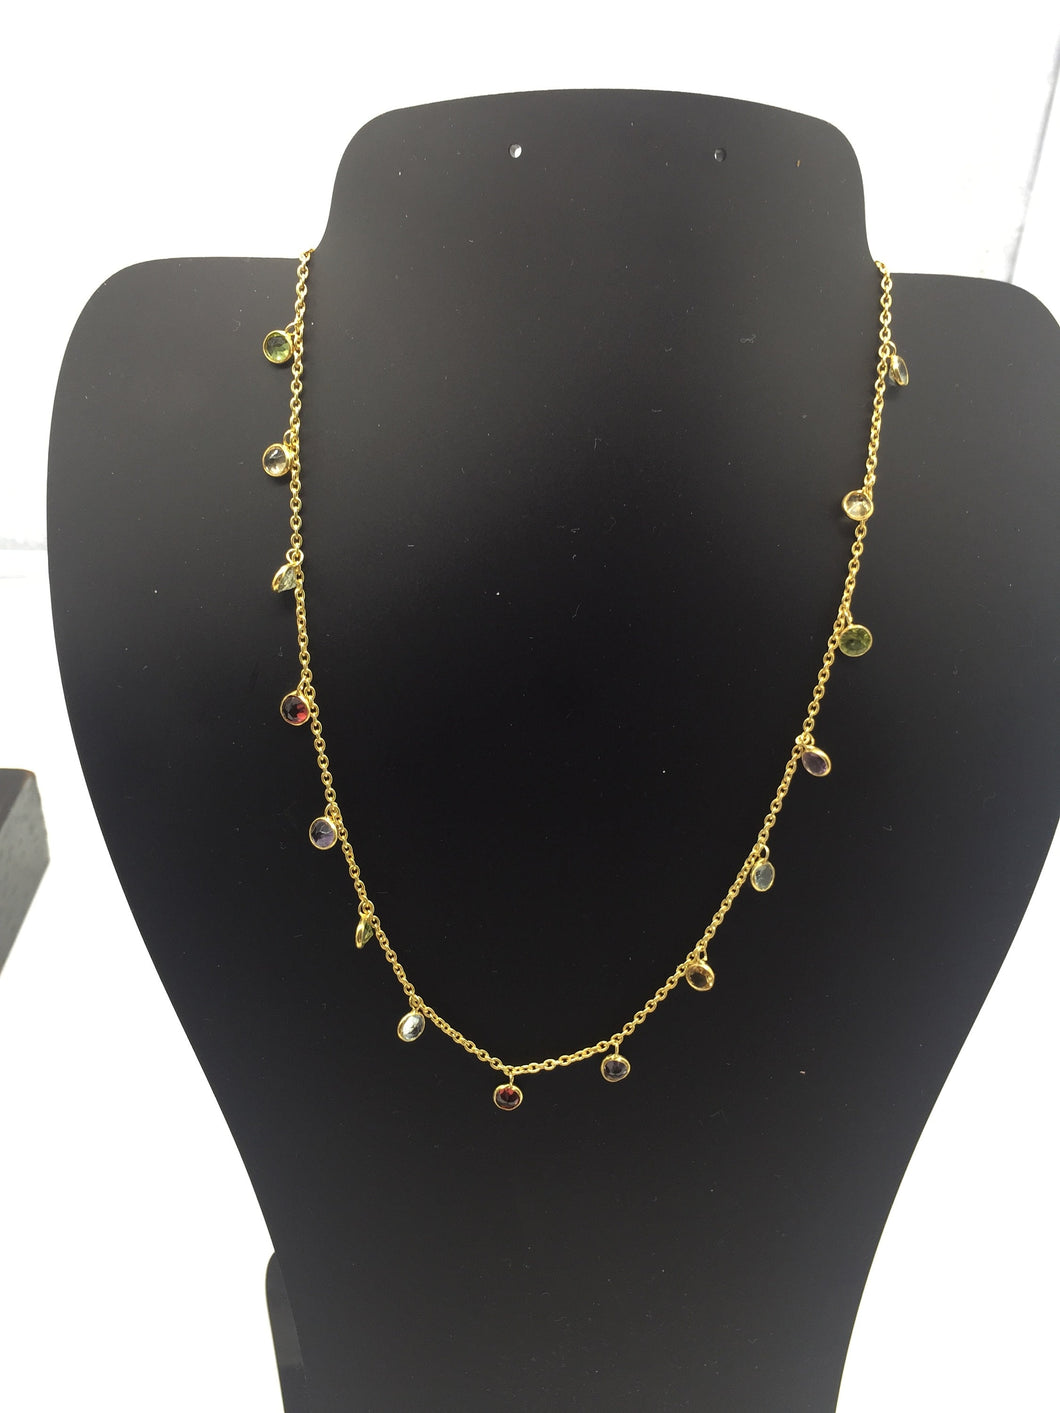 semi precious necklace,silver necklace,sterling necklace,sterling silver necklace,gem stone necklace,semi precious stone necklace